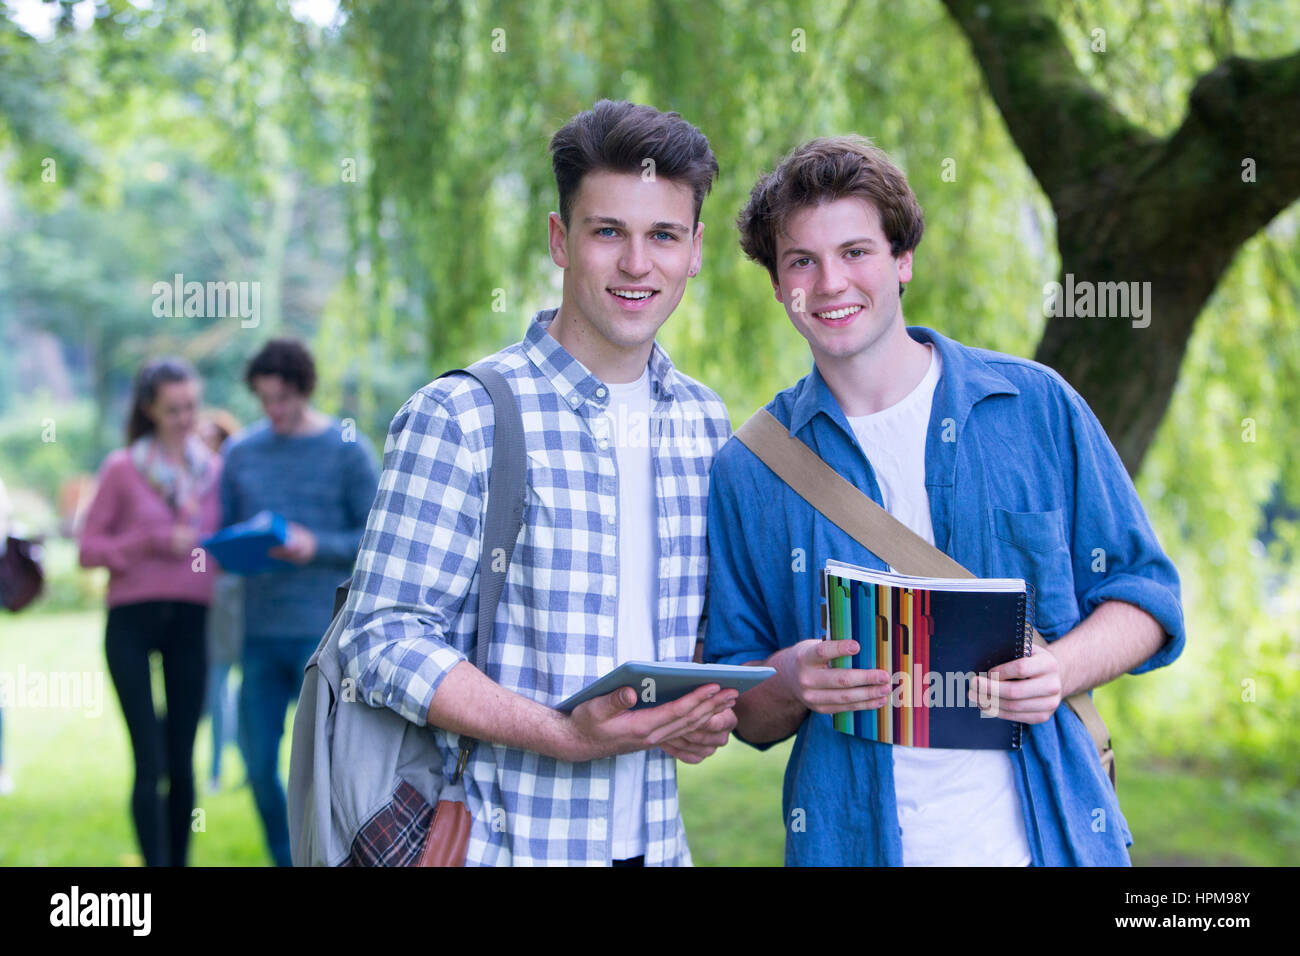 Zwei glückliche männliche Studenten Lächeln, als sie im Freien und Studie zu entspannen. Sie halten ihre Taschen, Bücher und ein digital-Tablette, wie sie in die Kamera blickt. Stockfoto